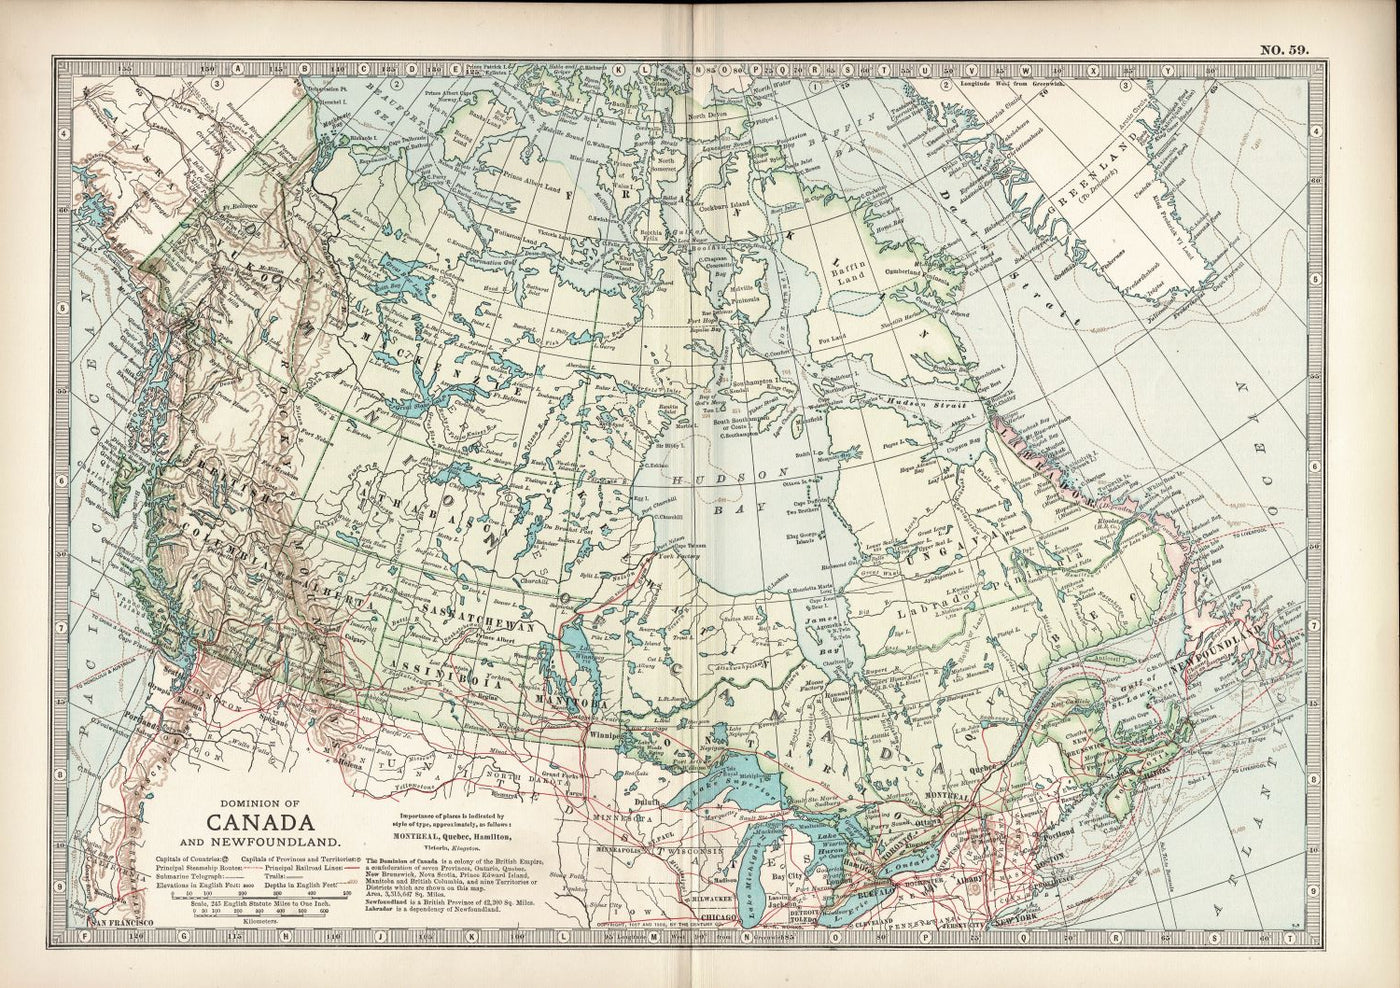 Dominion of Canada & Newfoundland, No.59, Encyclopaedia Britannica 1903